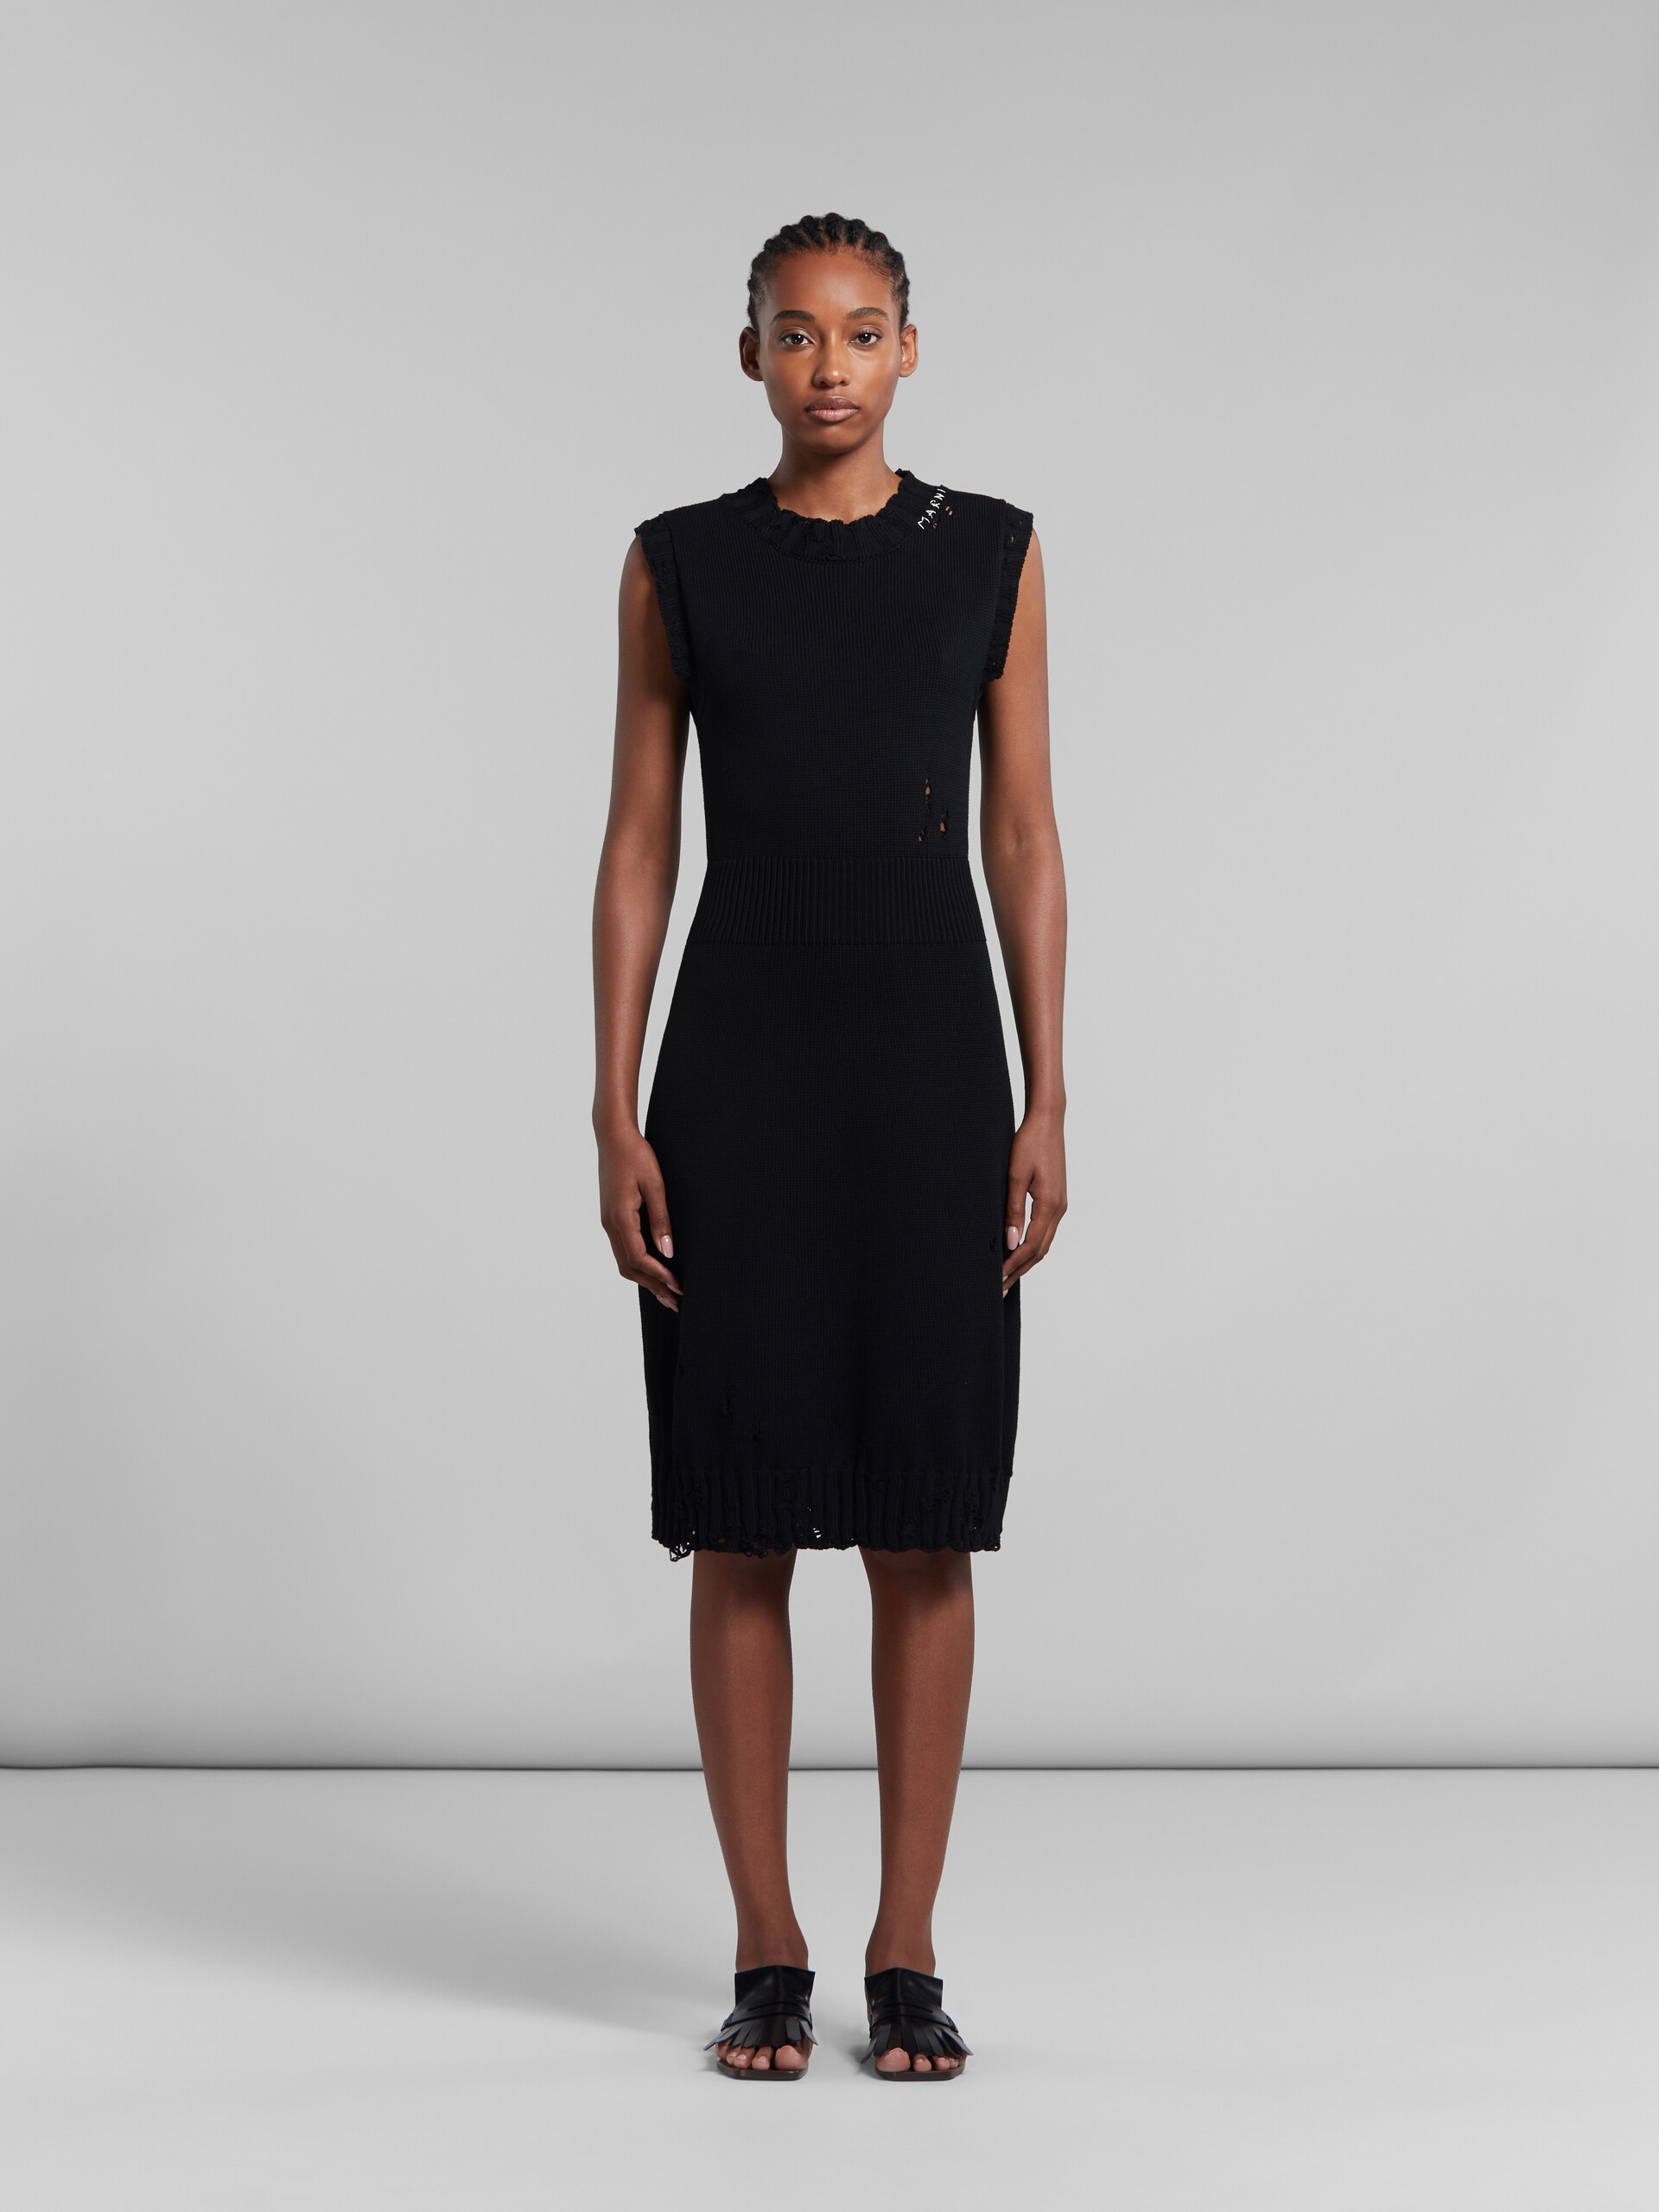 Vestido negro de punto de algodón efecto ajado - Vestidos - Image 2